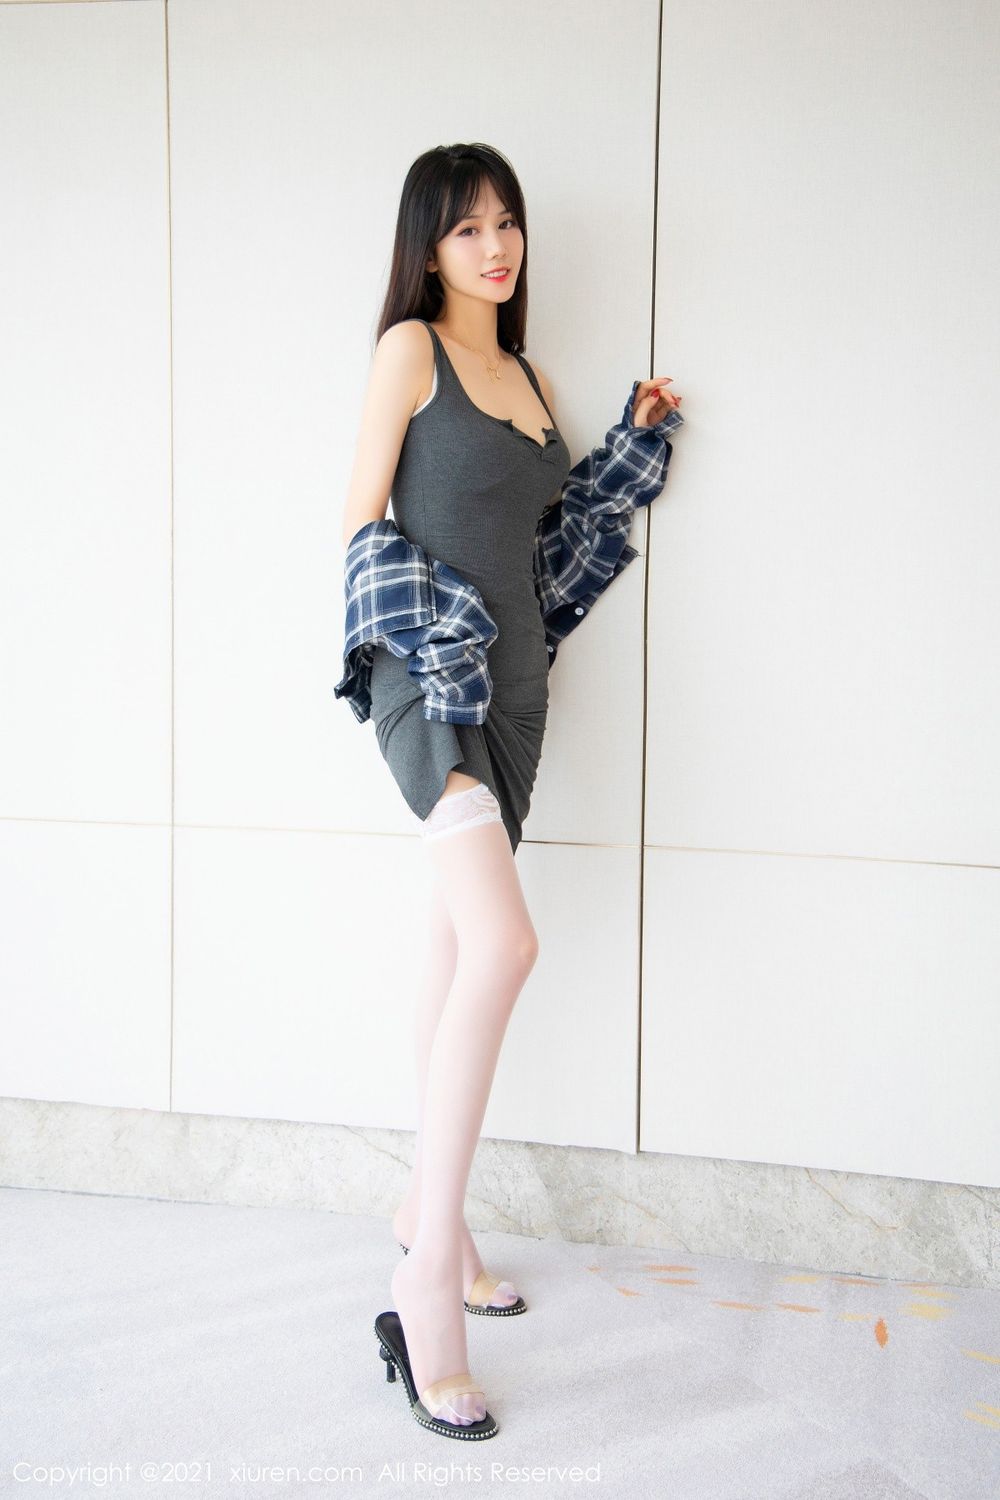 新人模特柚子178紧身吊裙+丝袜美腿曼妙身材性感写真